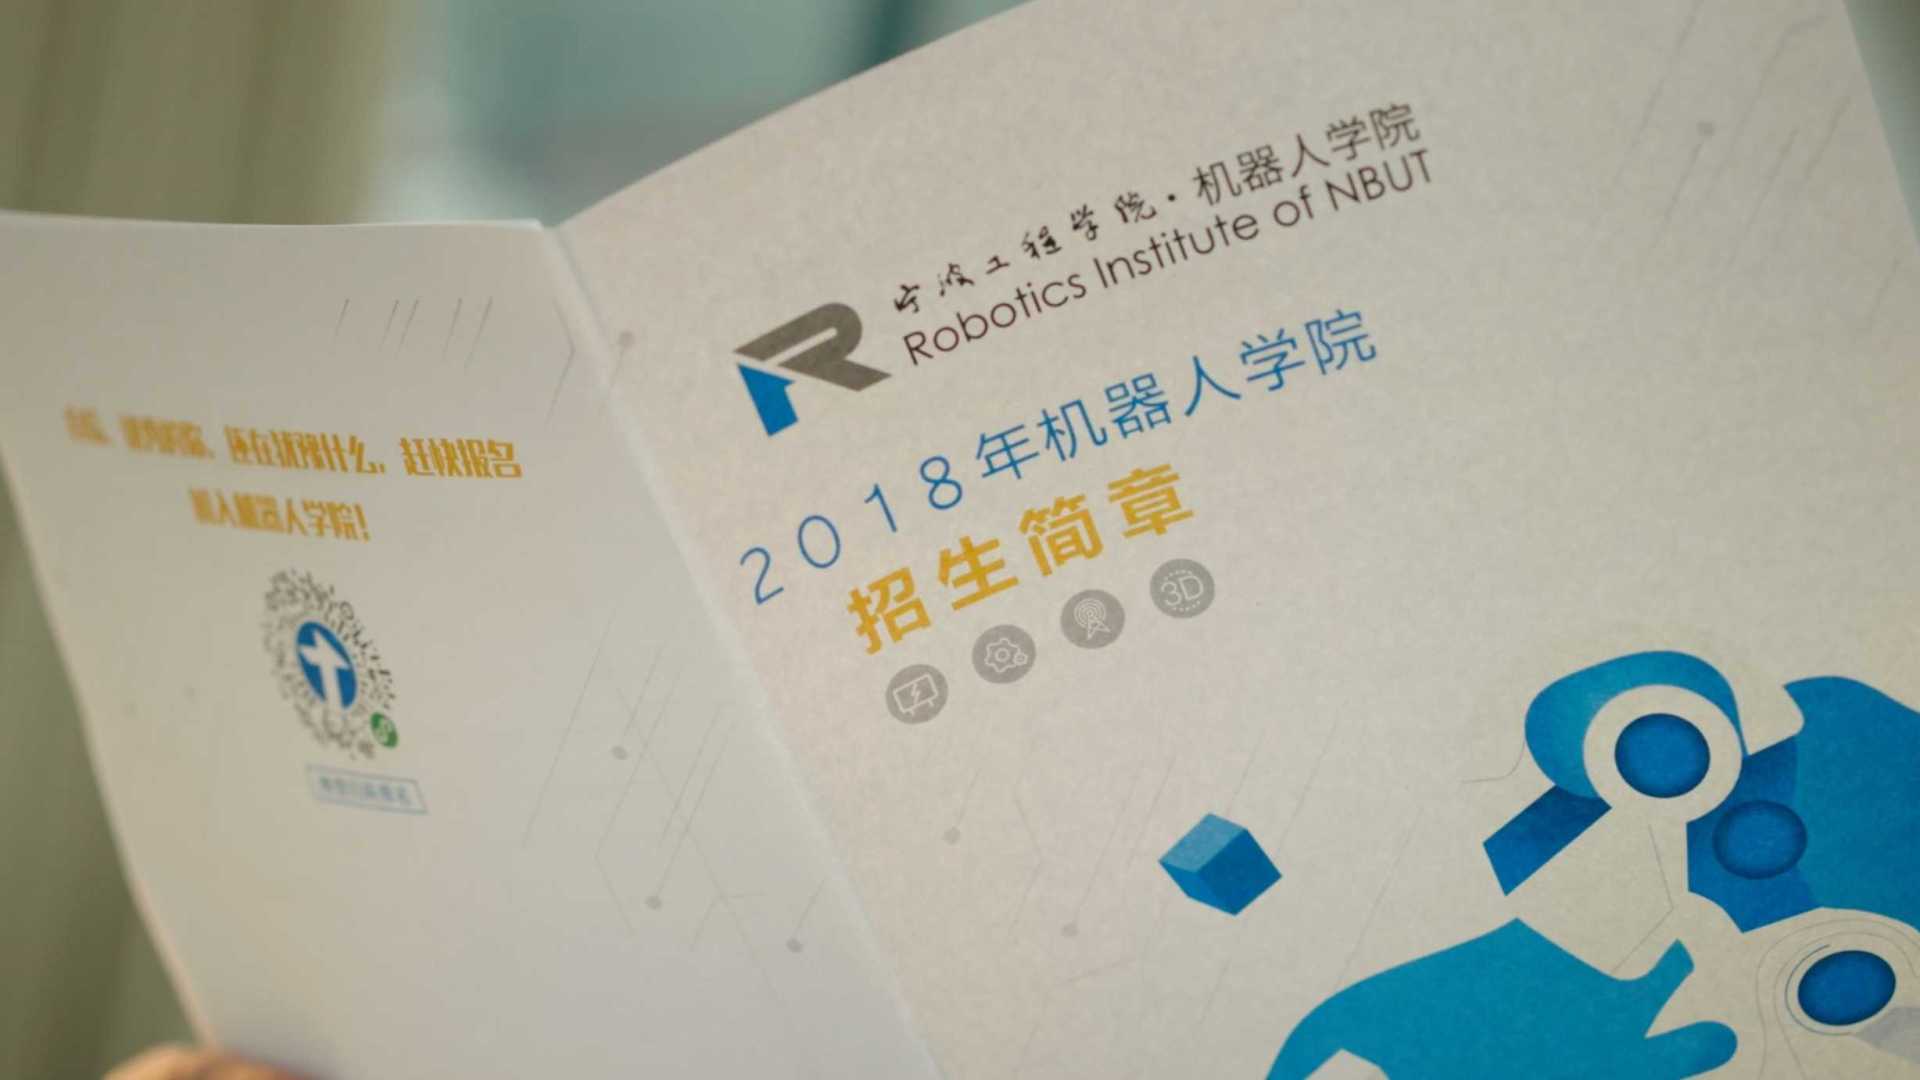 机器人学院宣传片 宁波工程学院 2022